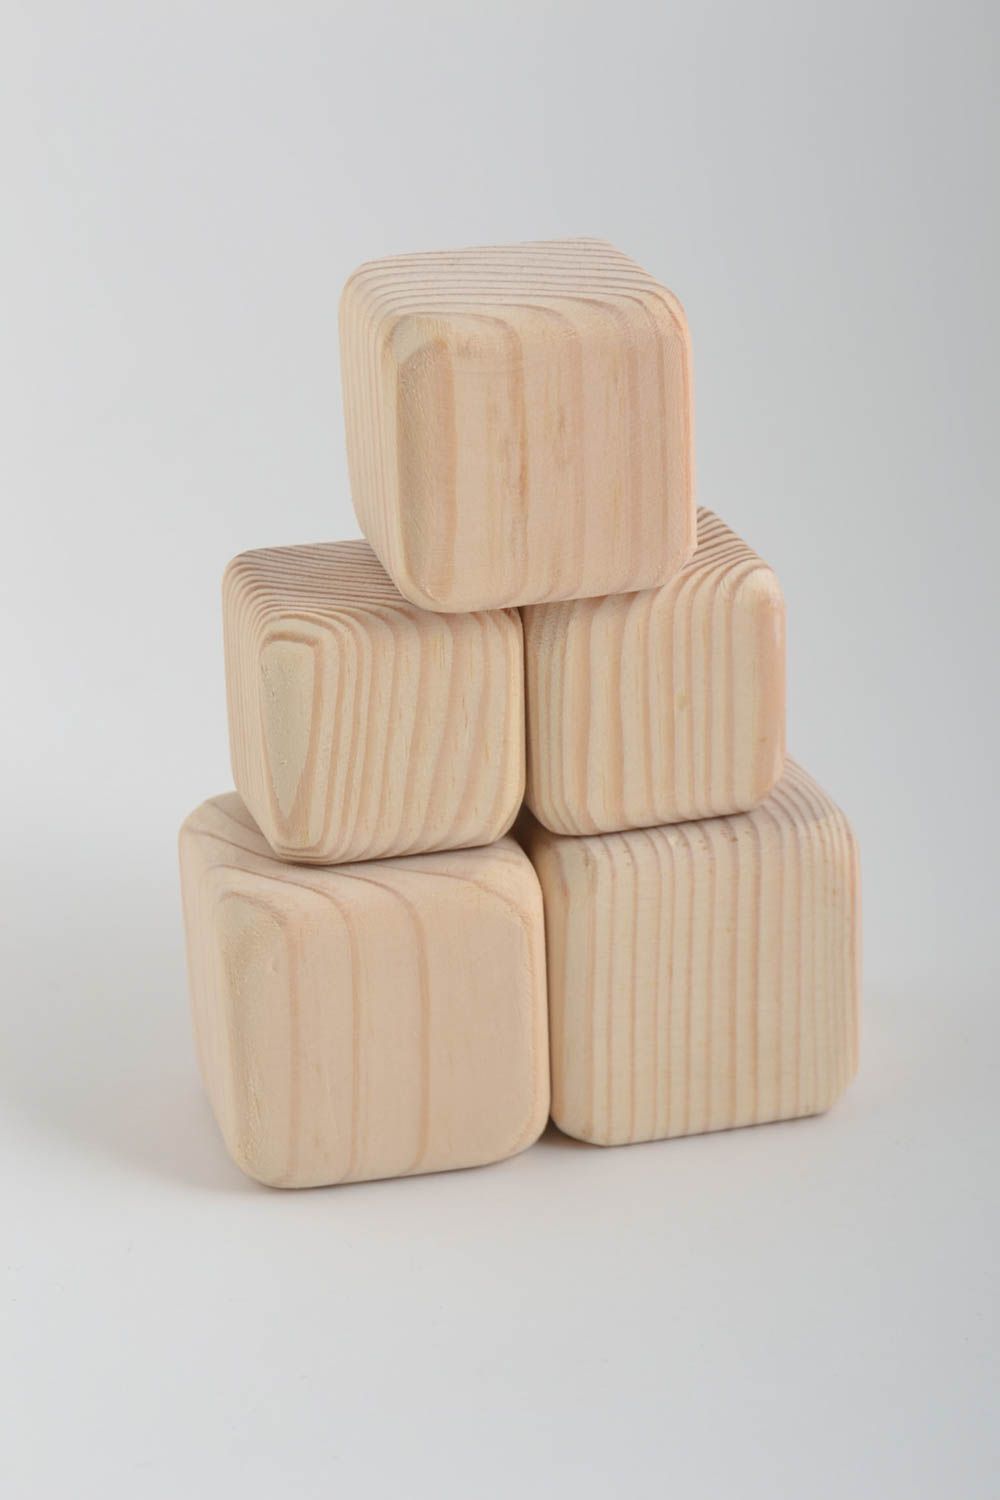 Conjunto de 5 cubos de madera hechos a mano juguetes para niños regalo original  foto 3